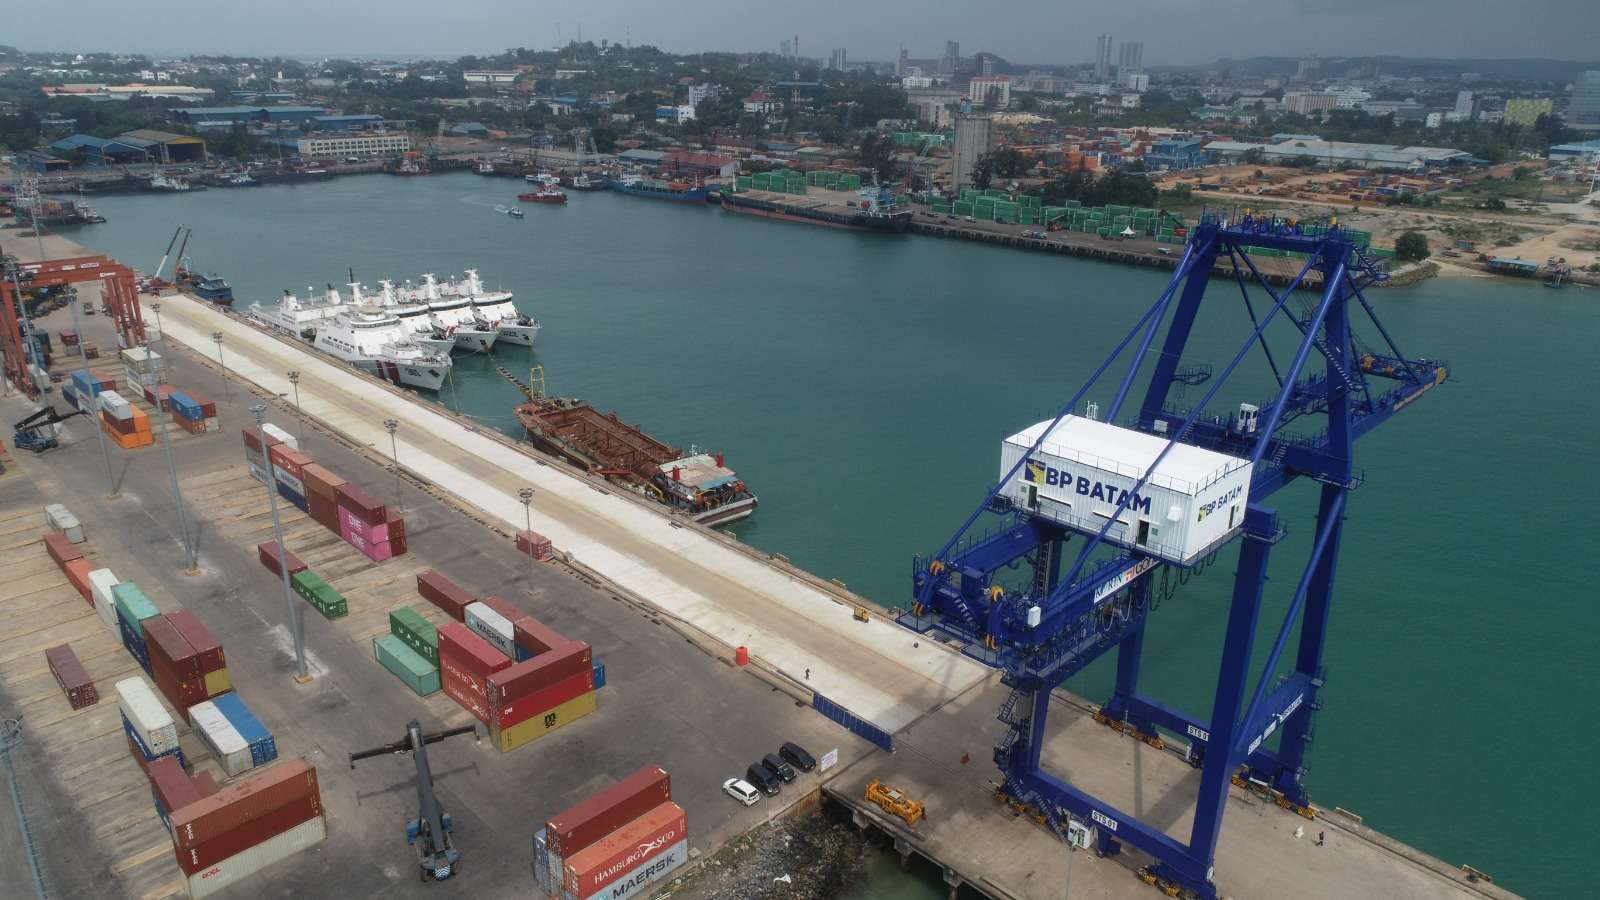 Bongkar muat peti kemas di Pelabuhan Batam